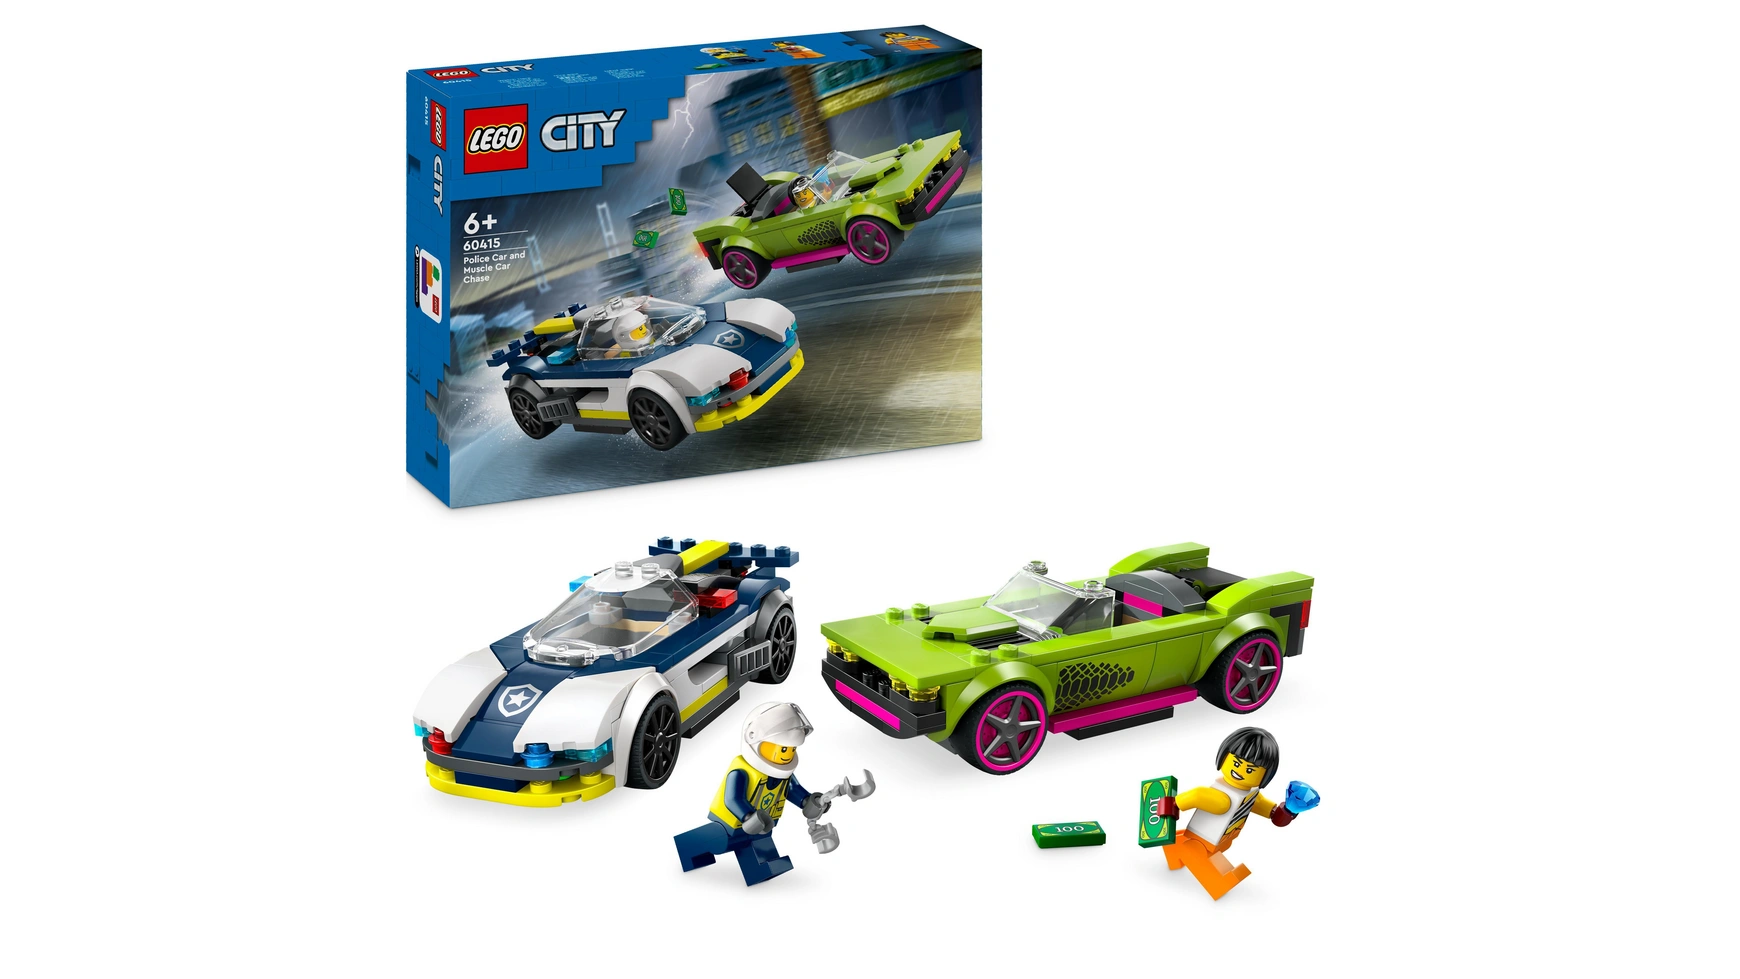 lego city погоня на полицейской машине и игрушечный автомобиль с мускулистыми машинами Lego City Погоня на полицейской машине и игрушечный автомобиль с мускулистыми машинами